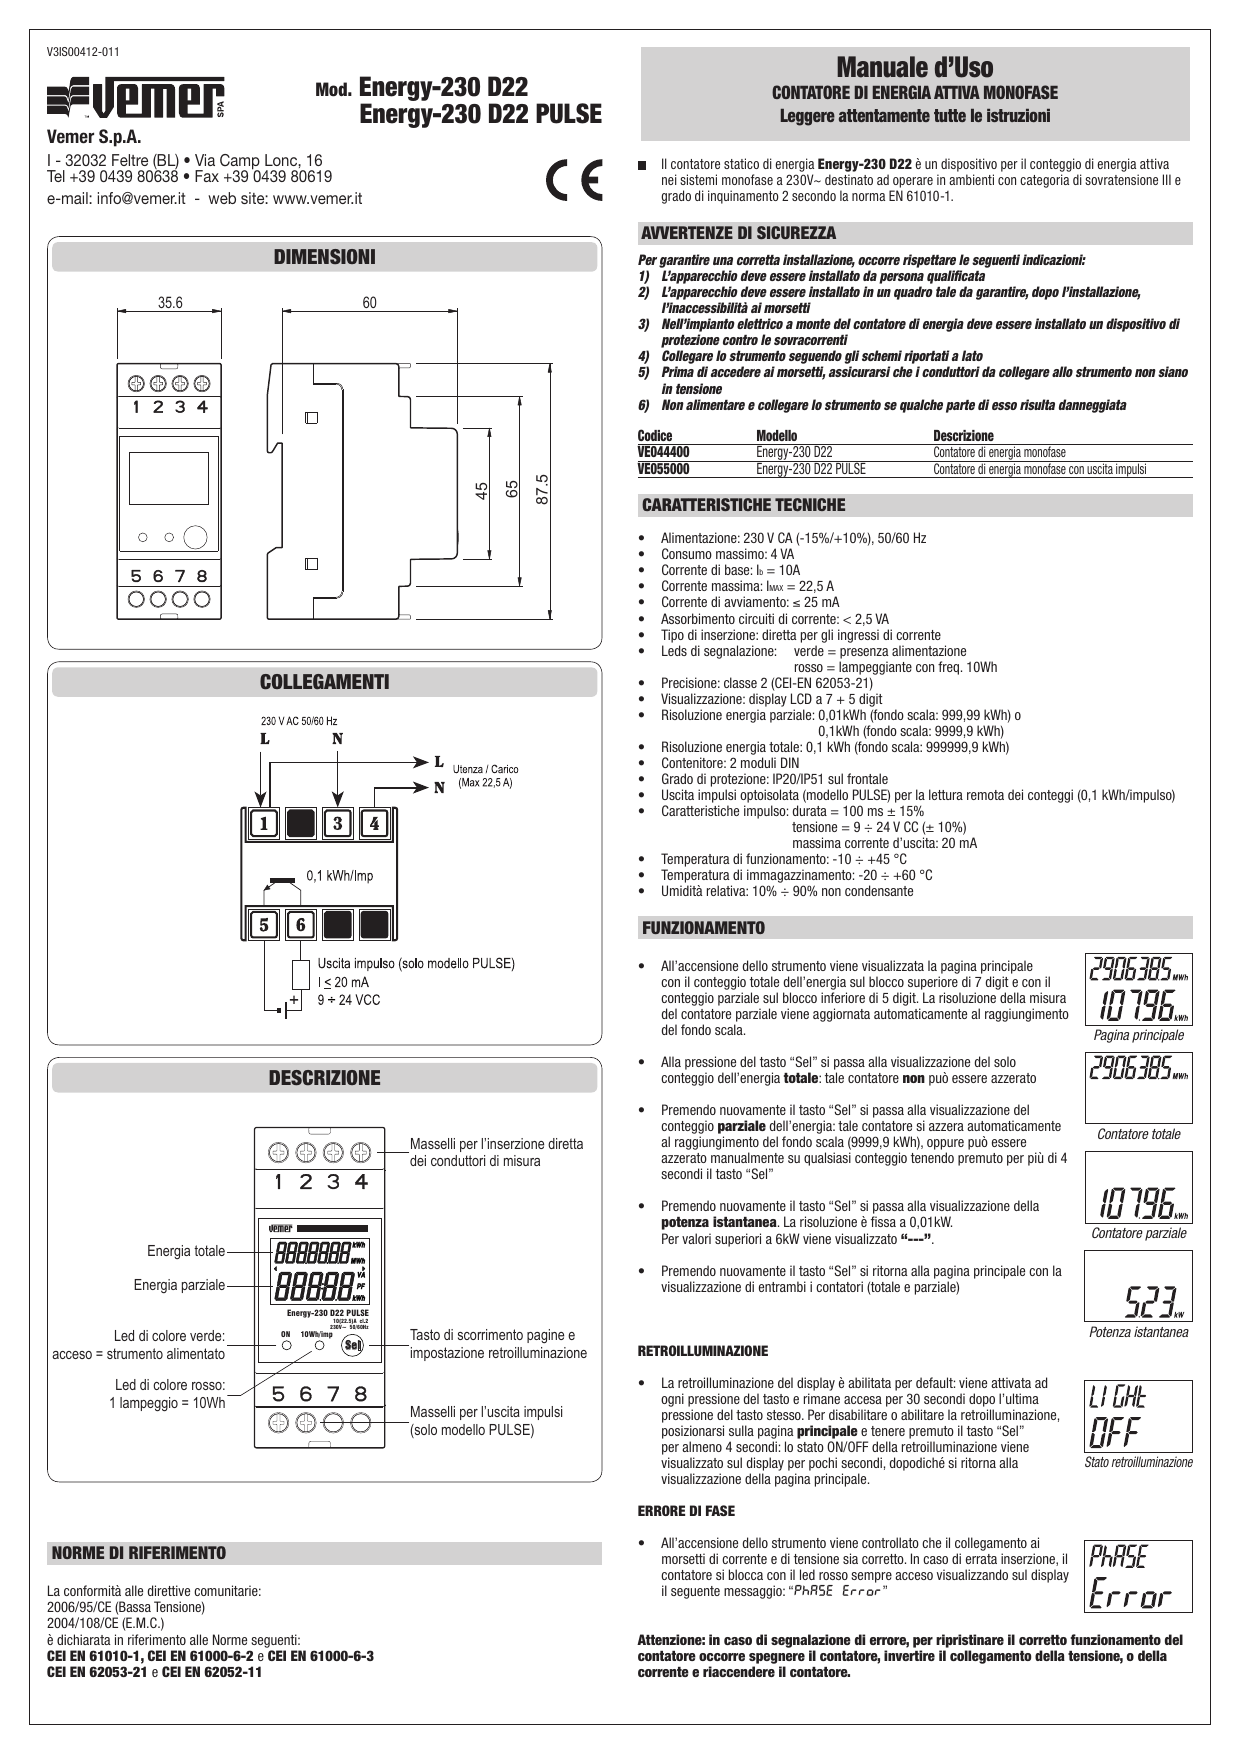 Vemer Energy-230 D22 PULSE User Manual